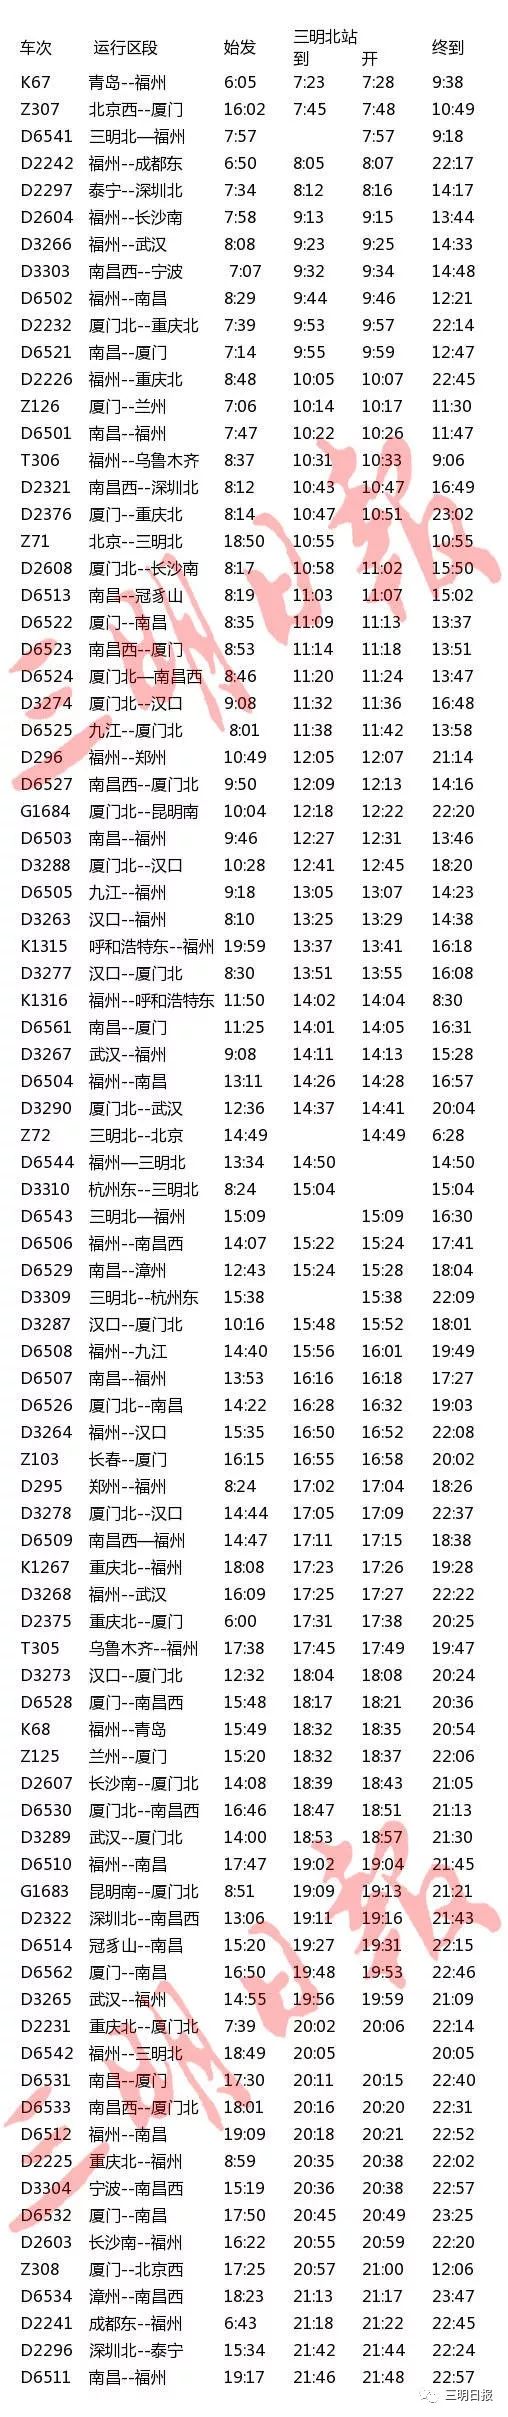 2008年铁路中国铁路旅客列车时刻表,中国铁路旅客运量,铁路旅客意外伤害保险客运列车时刻表_12月28日起铁路图将调整